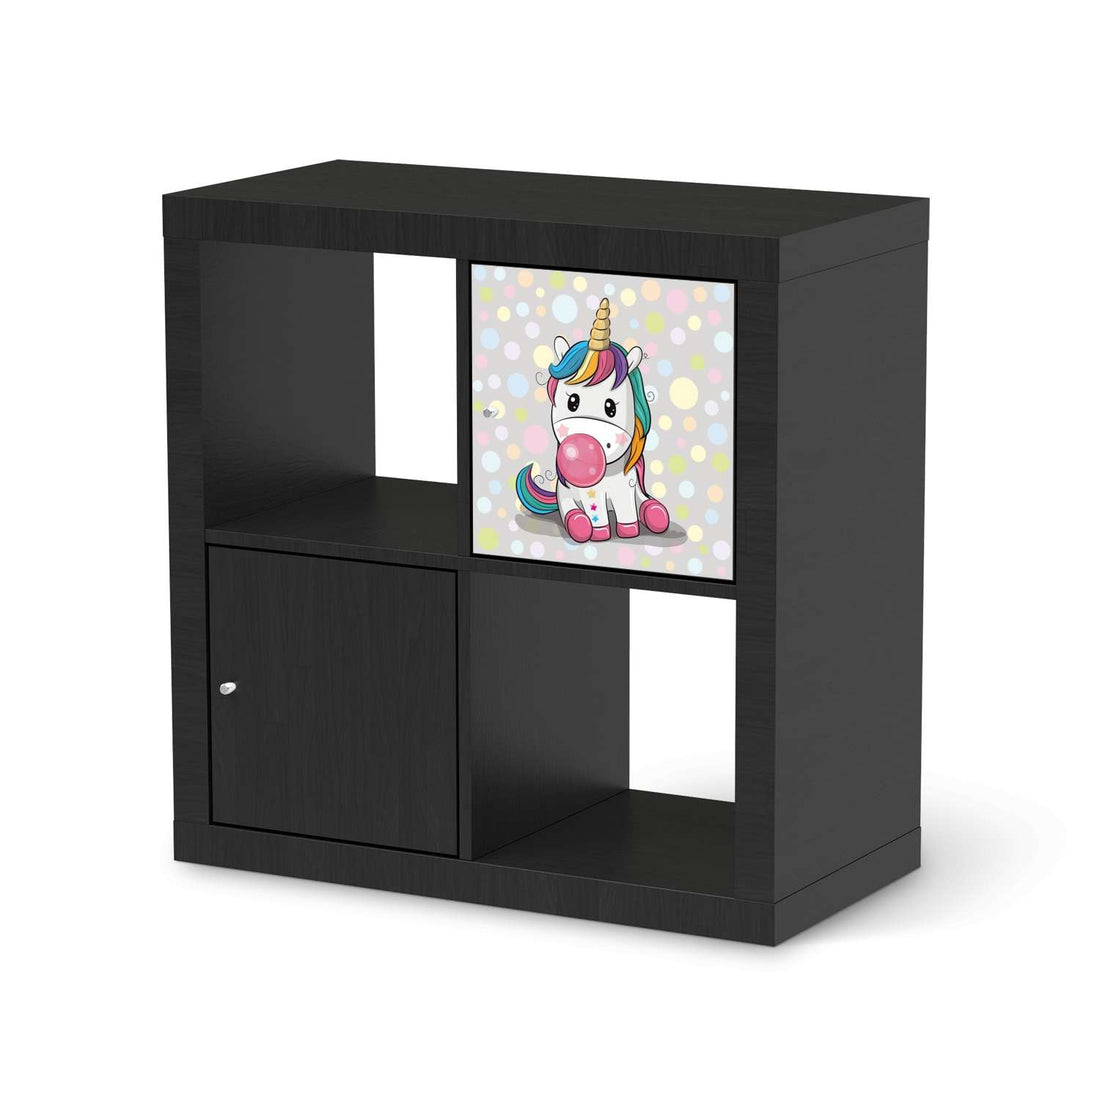 Selbstklebende Folie Rainbow das Einhorn - IKEA Kallax Regal 1 Türe - schwarz